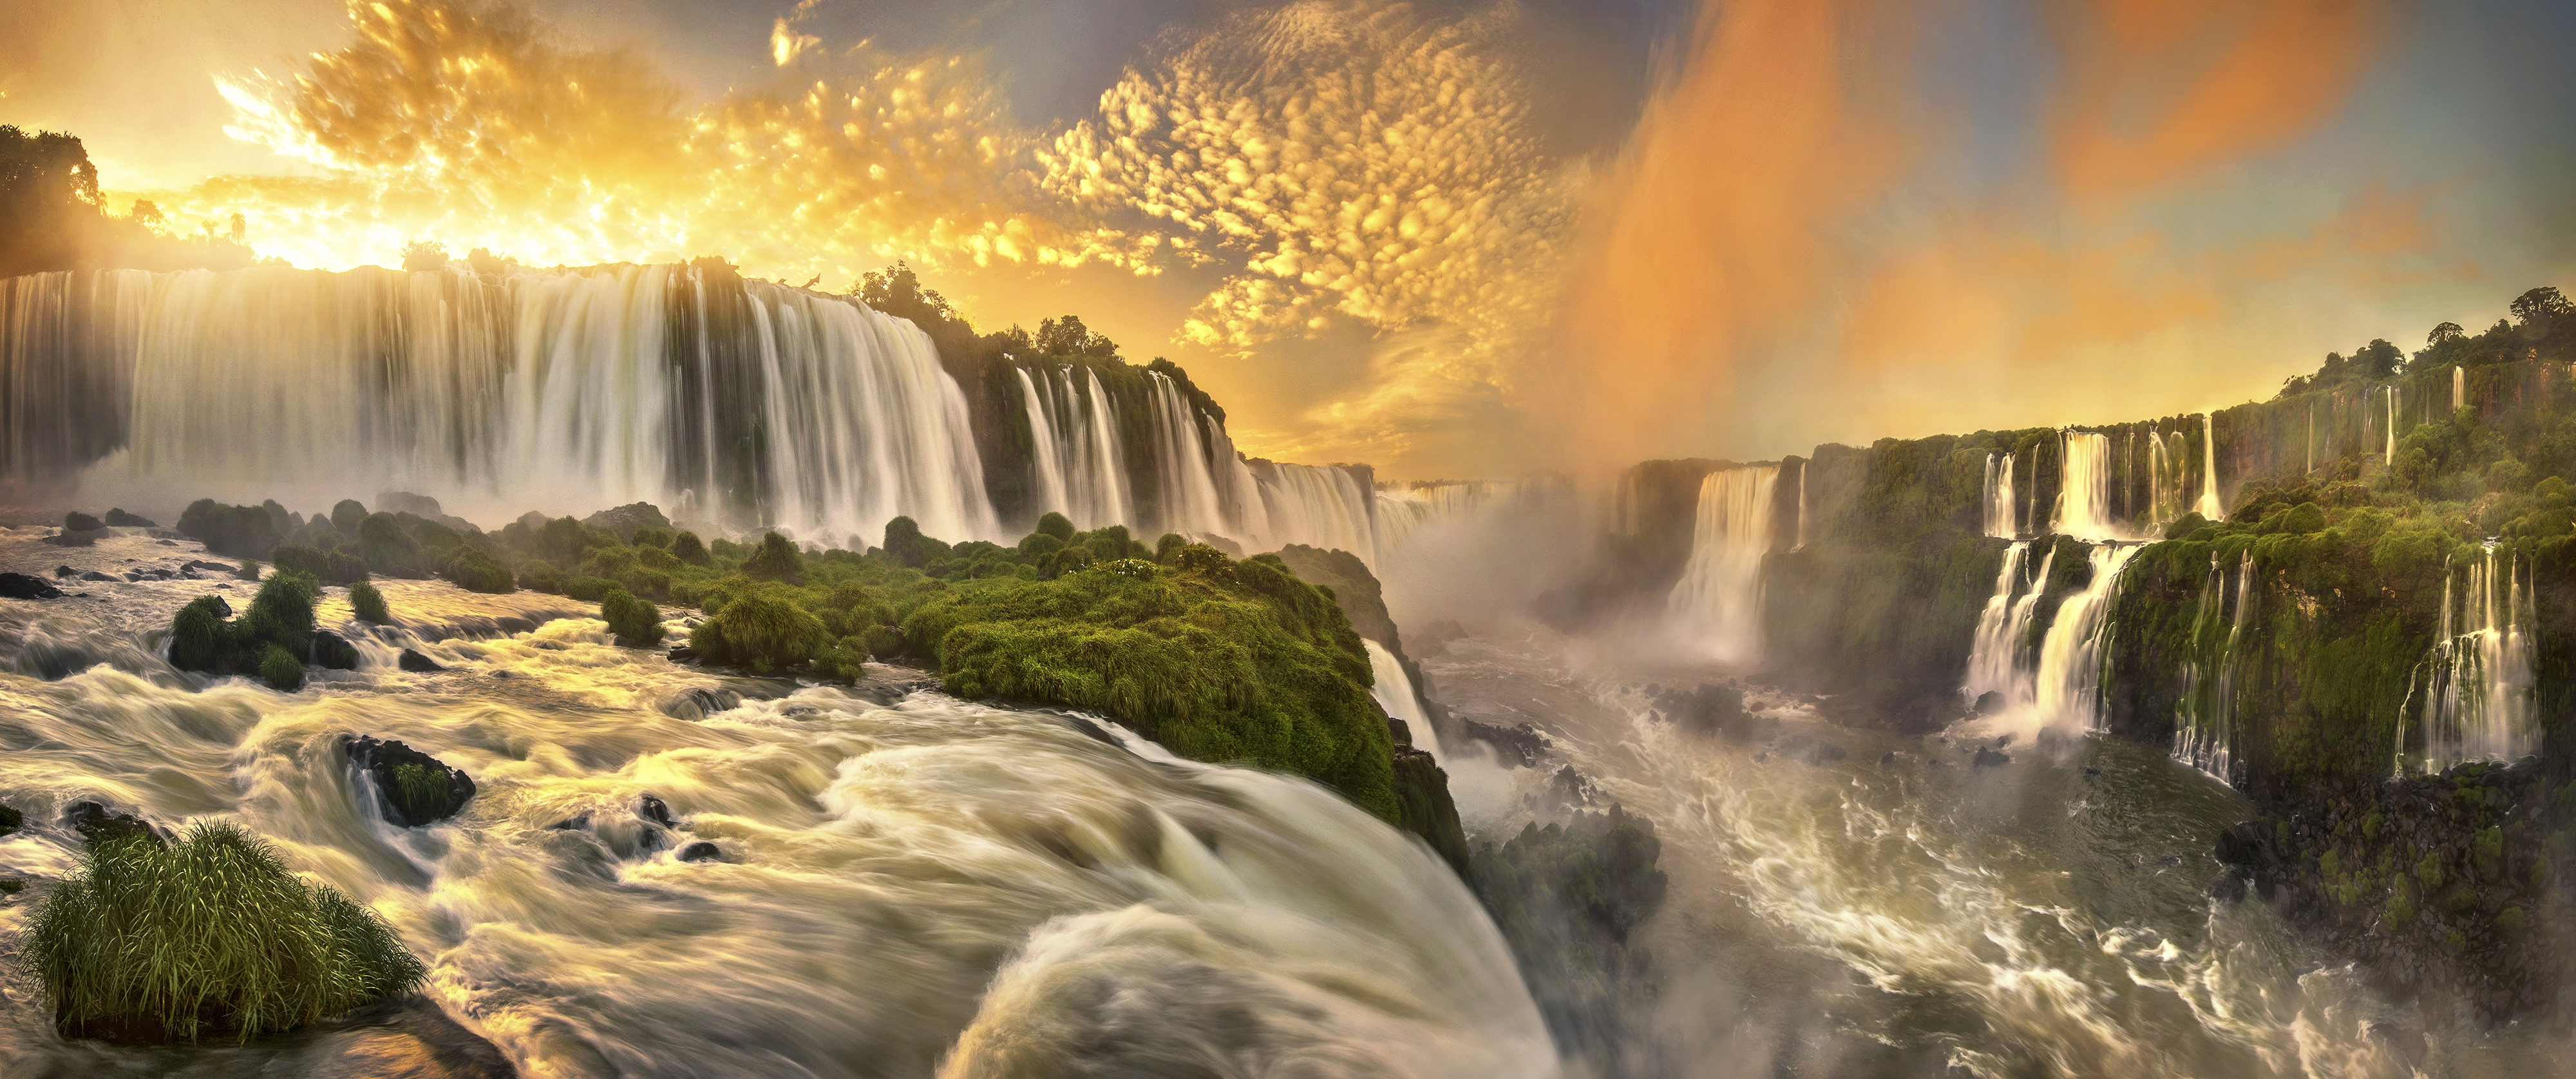 Brazil Glow Iguazu Falls Sunset Waterfall 4000x1675